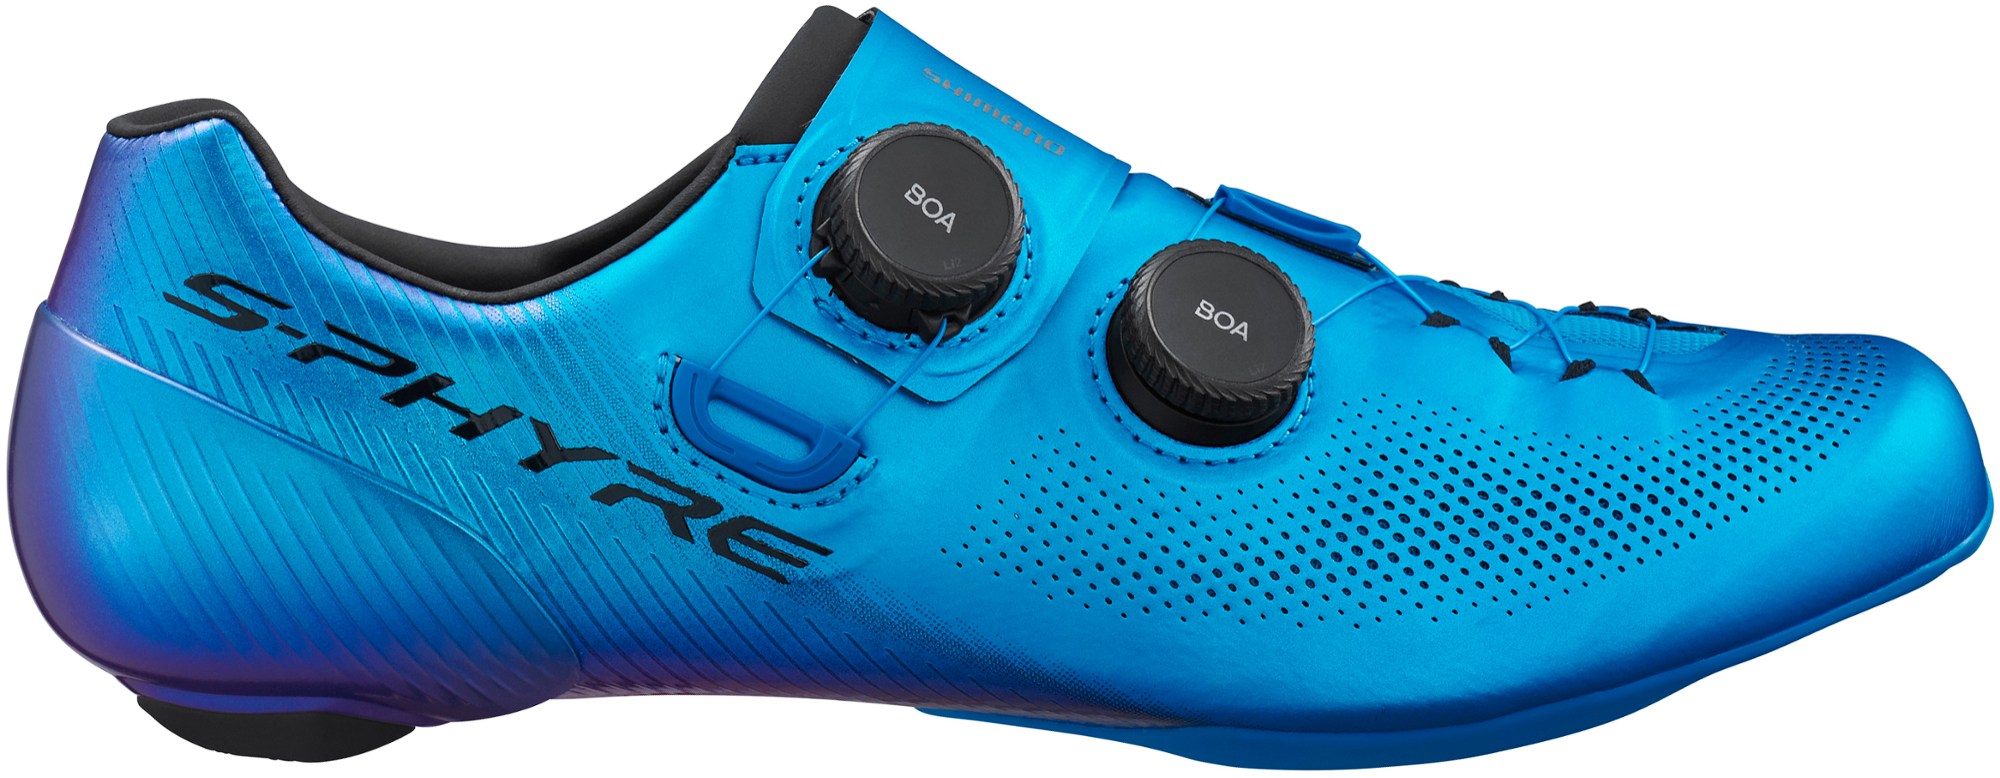 Велосипедная обувь RC9 — мужские Shimano, синий